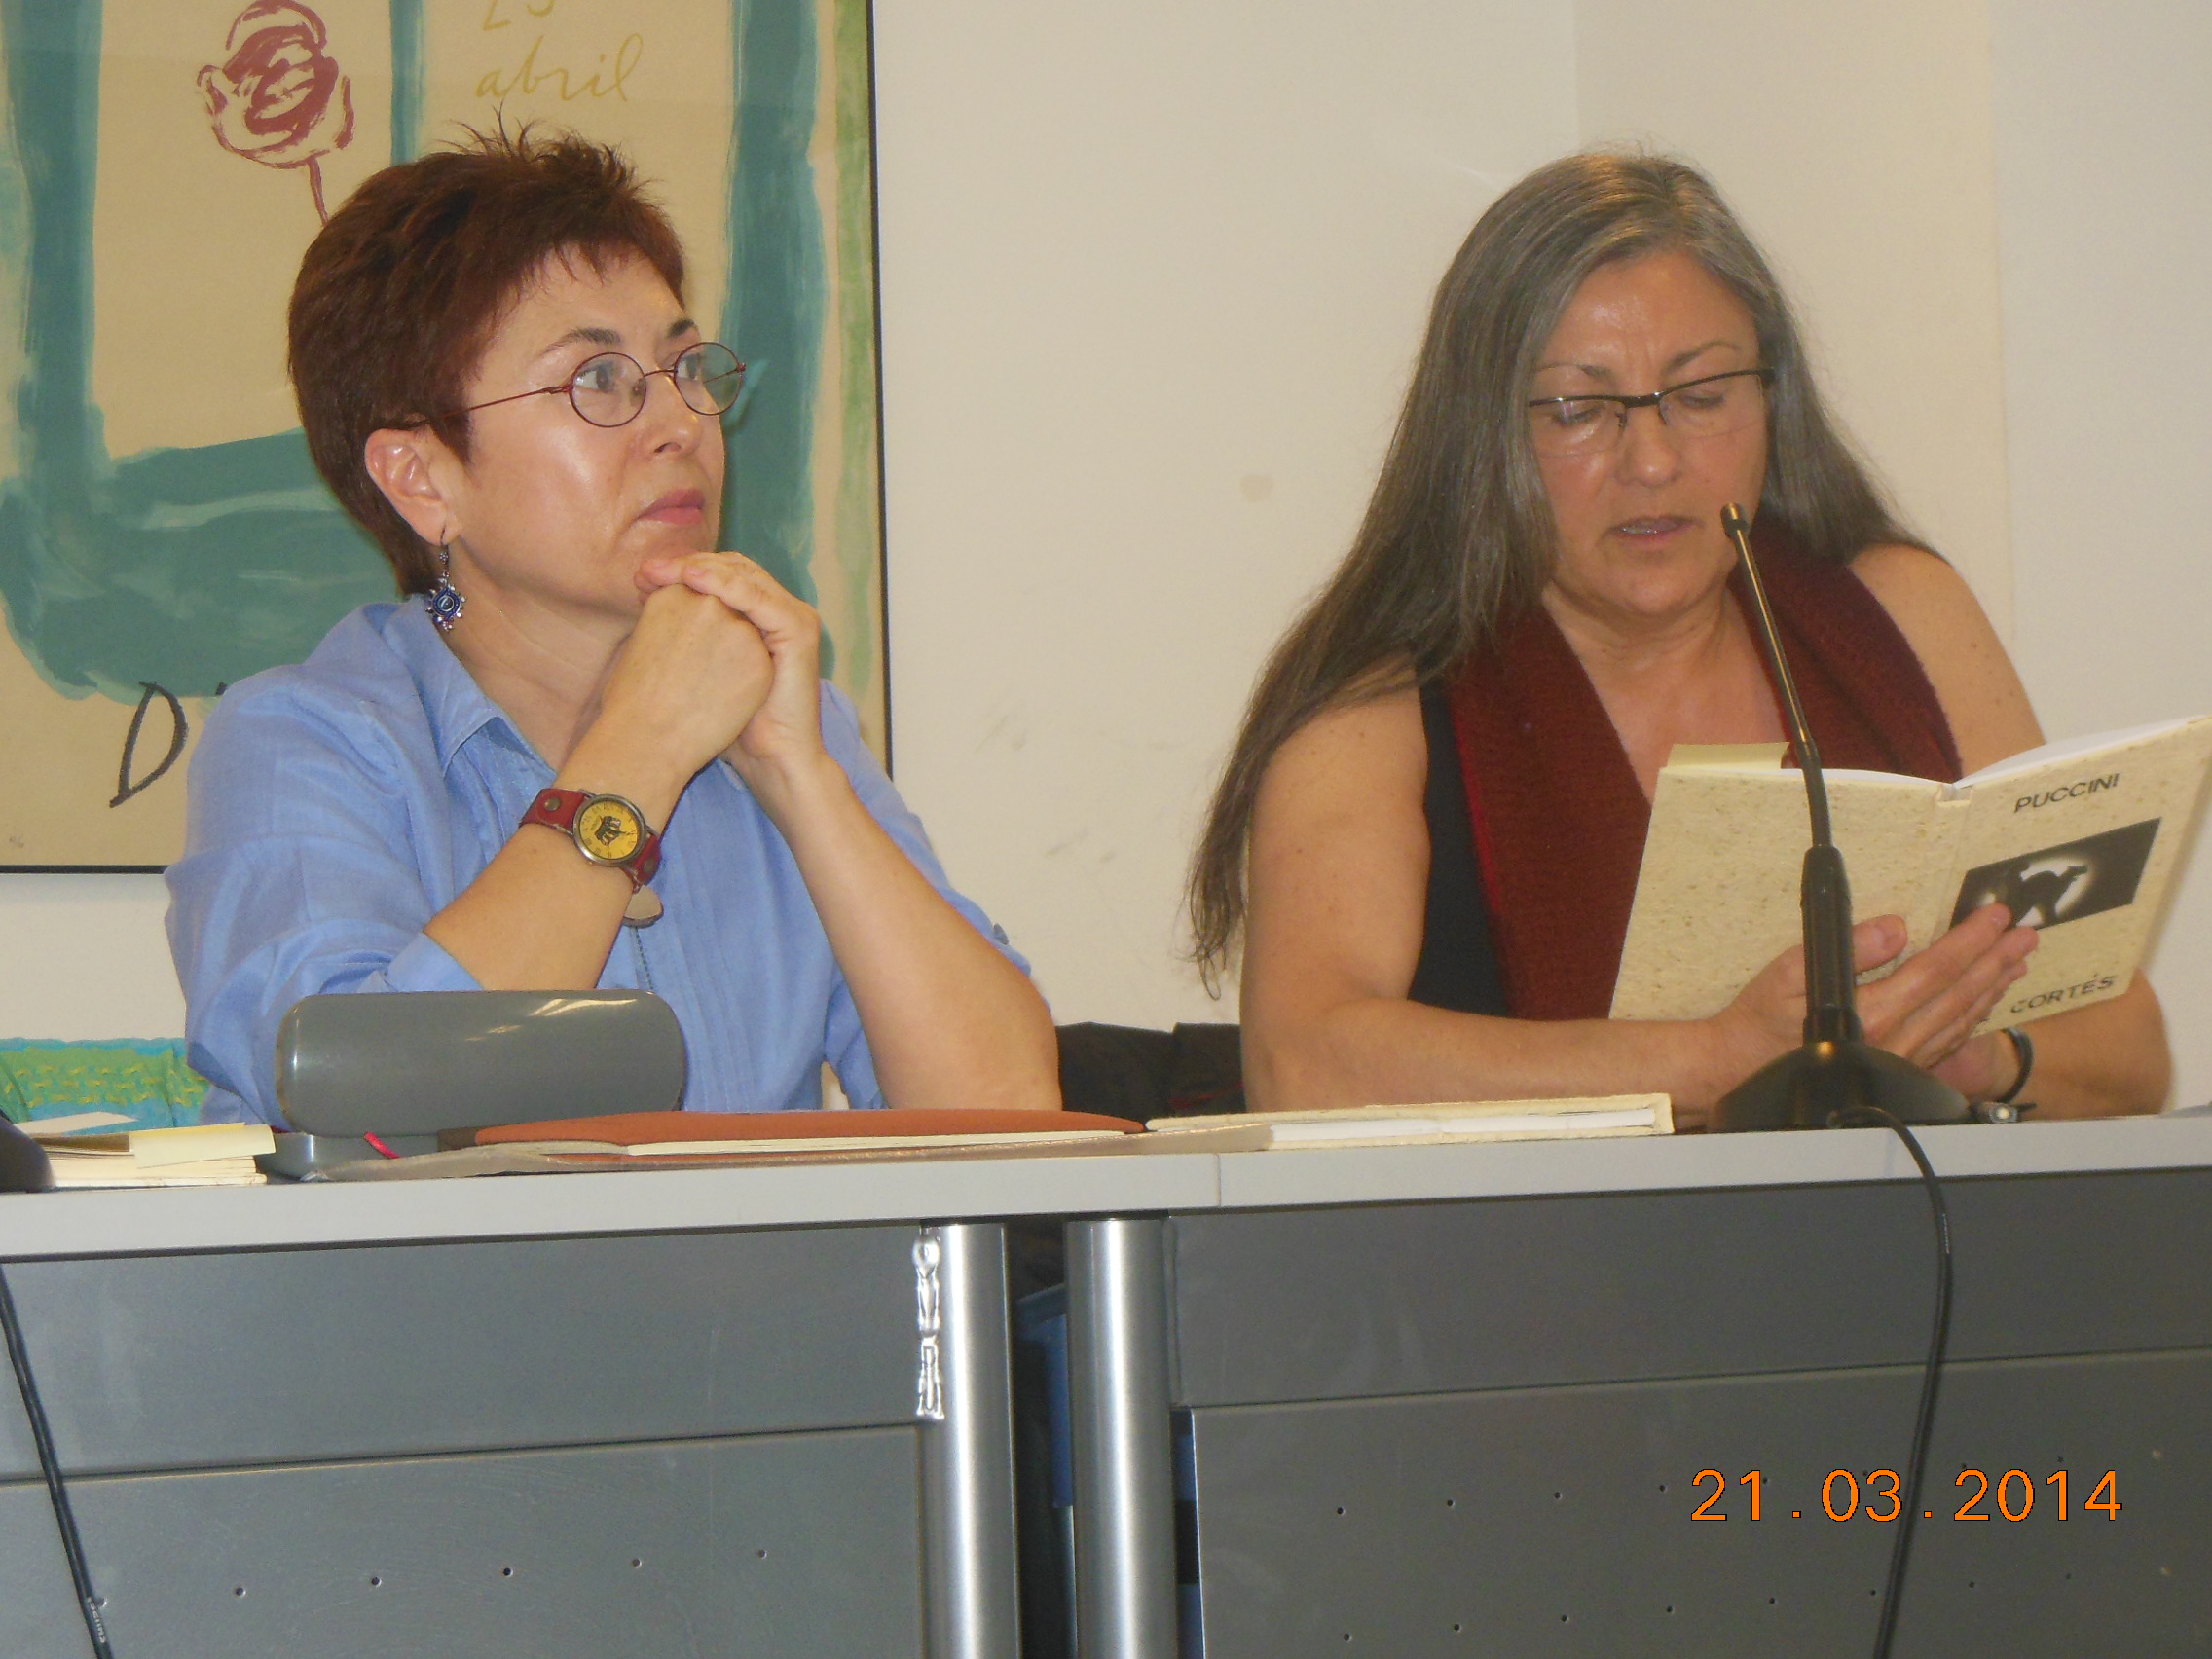 Anna Rossell (derecha) con la escritora Cise Cortés. Tertulia del Laberinto de Ariadna, Ateneo Barcelonés, marzo 2014